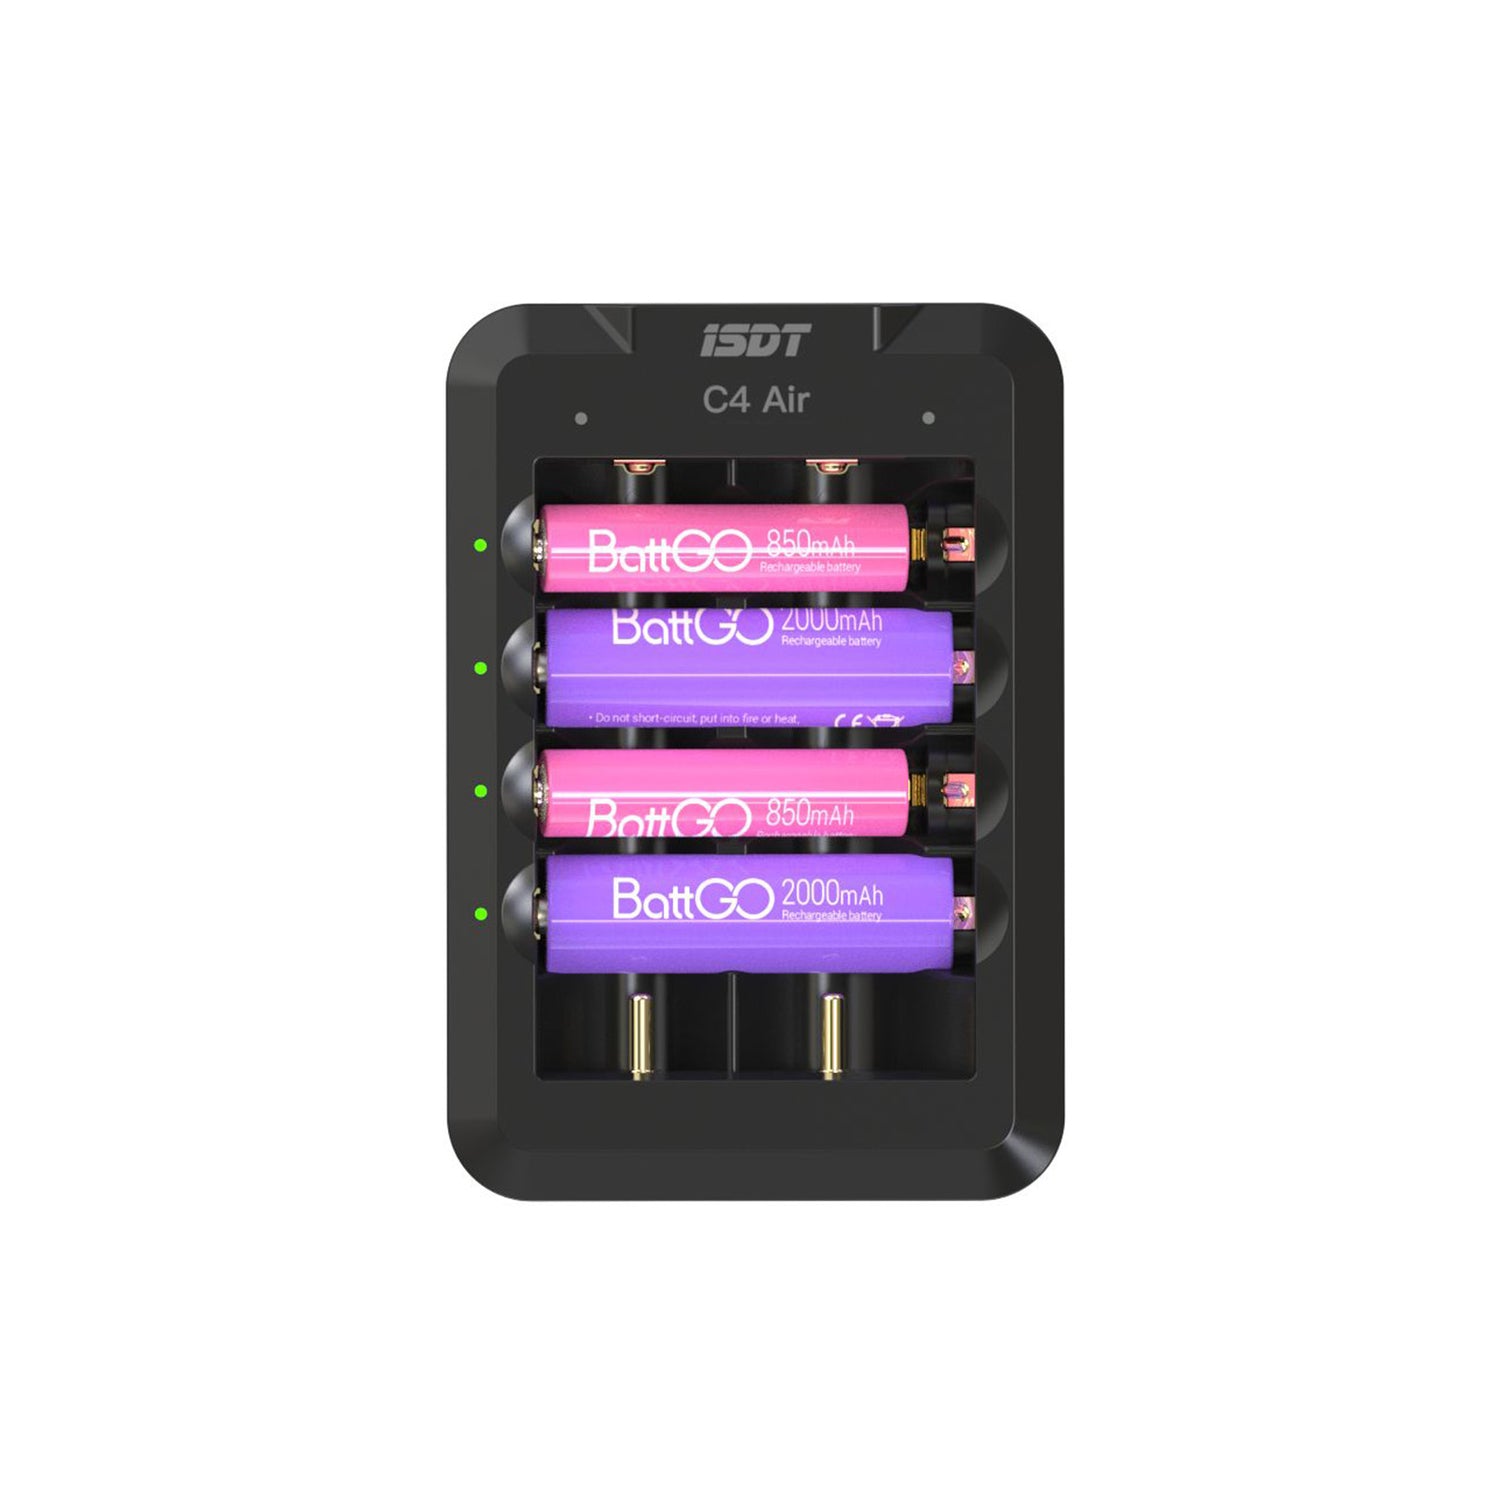 C4 Air Quick Batterie-Ladegeräter, 6 Slots USB C Statter Battery Ladter mat Bluetooth-App Connection Funktioun